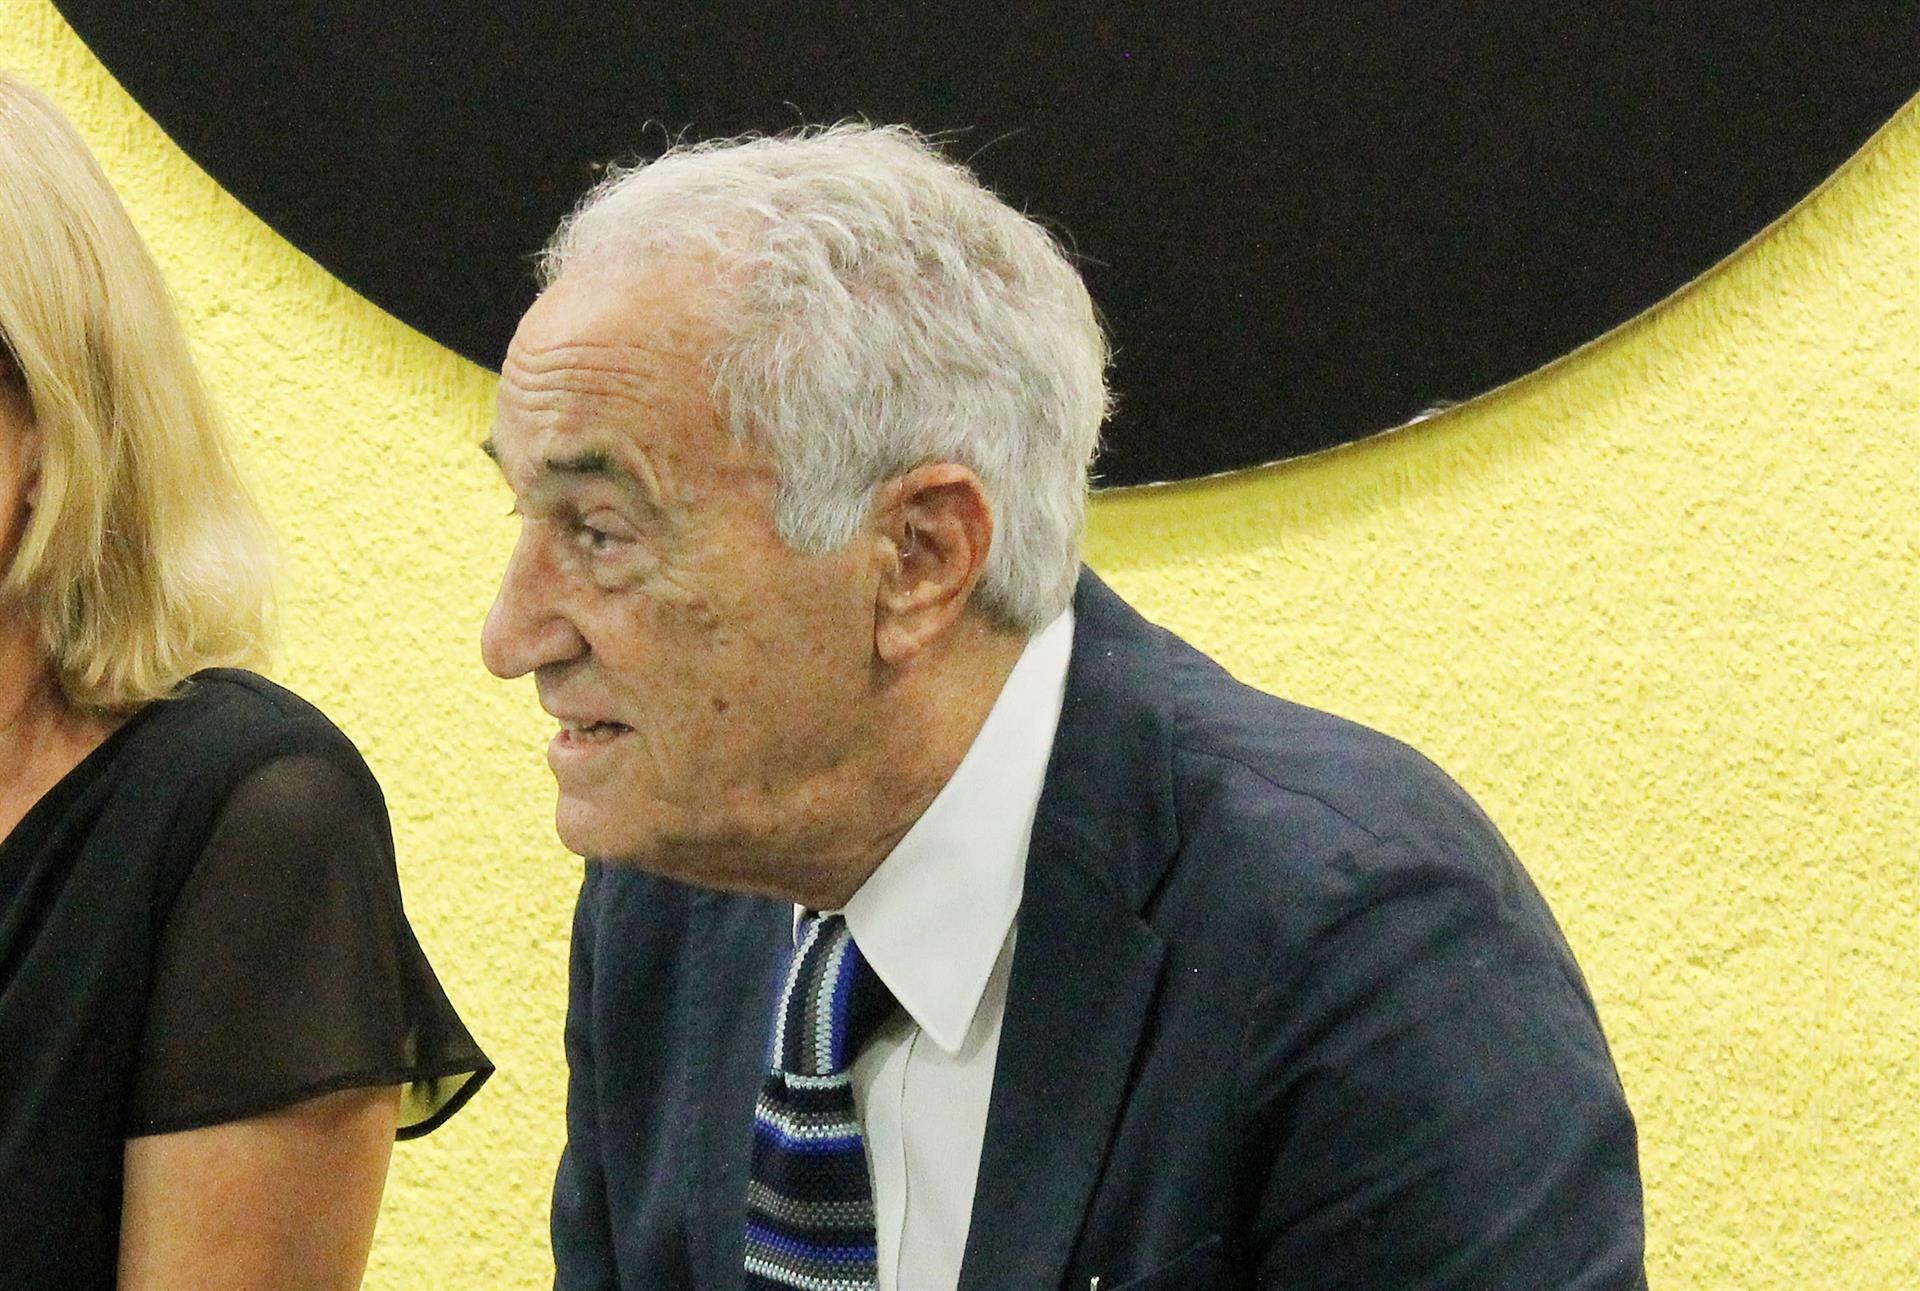 Fallece el periodista José María Carrascal a los 92 años. El periodista José María Carrascal, durante la presentación de uno de sus libros. - EUROPA PRESS - Archivo.